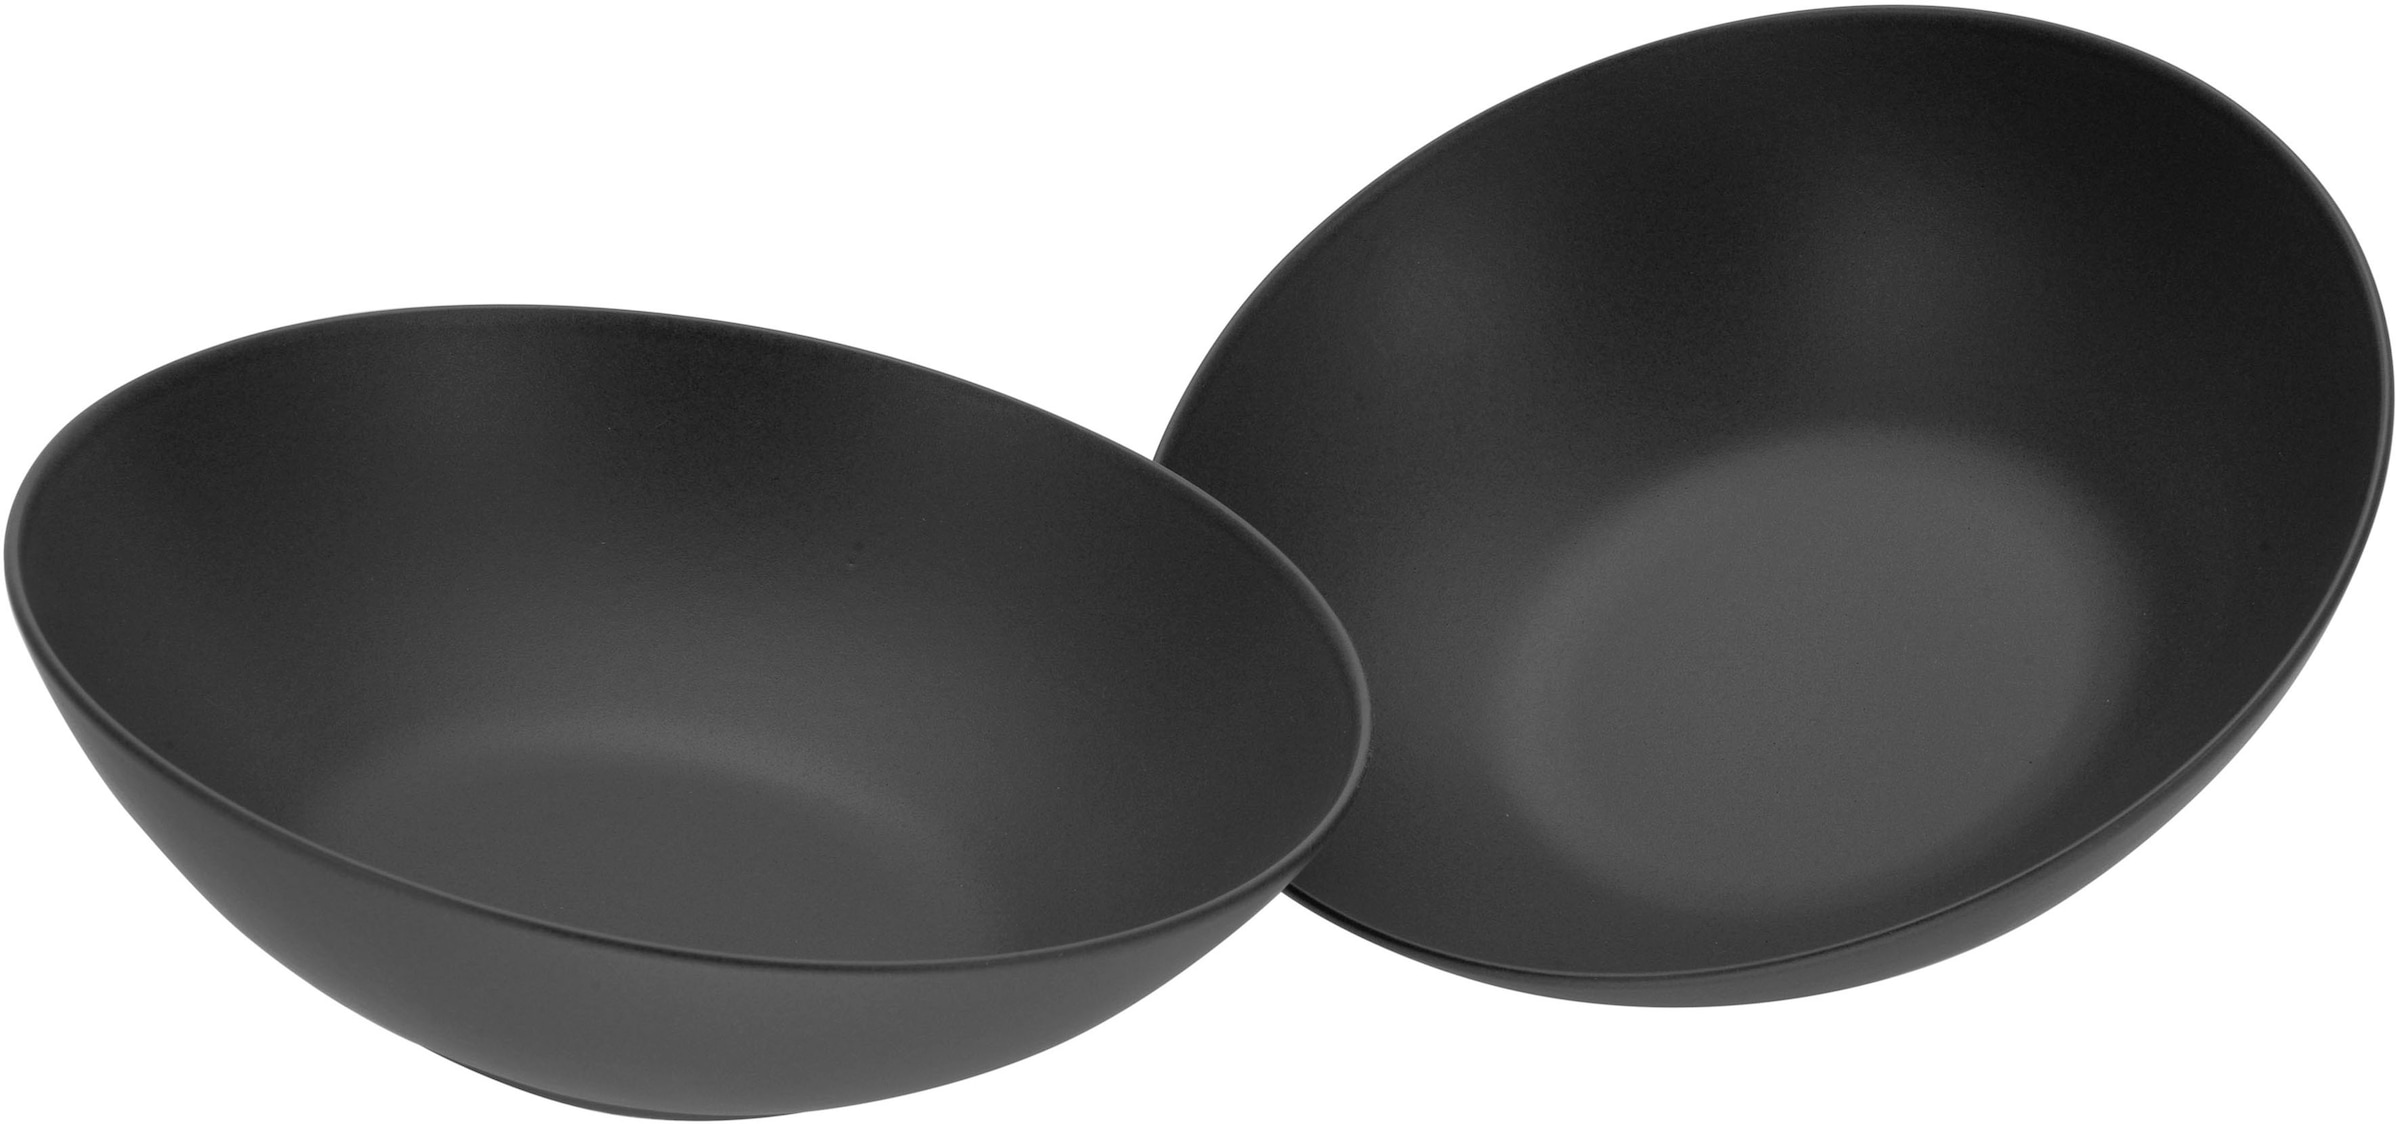 CreaTable Salatschüssel »Soft Touch Black«, 2 tlg., aus Steinzeug, Ø 24 cm  | BAUR